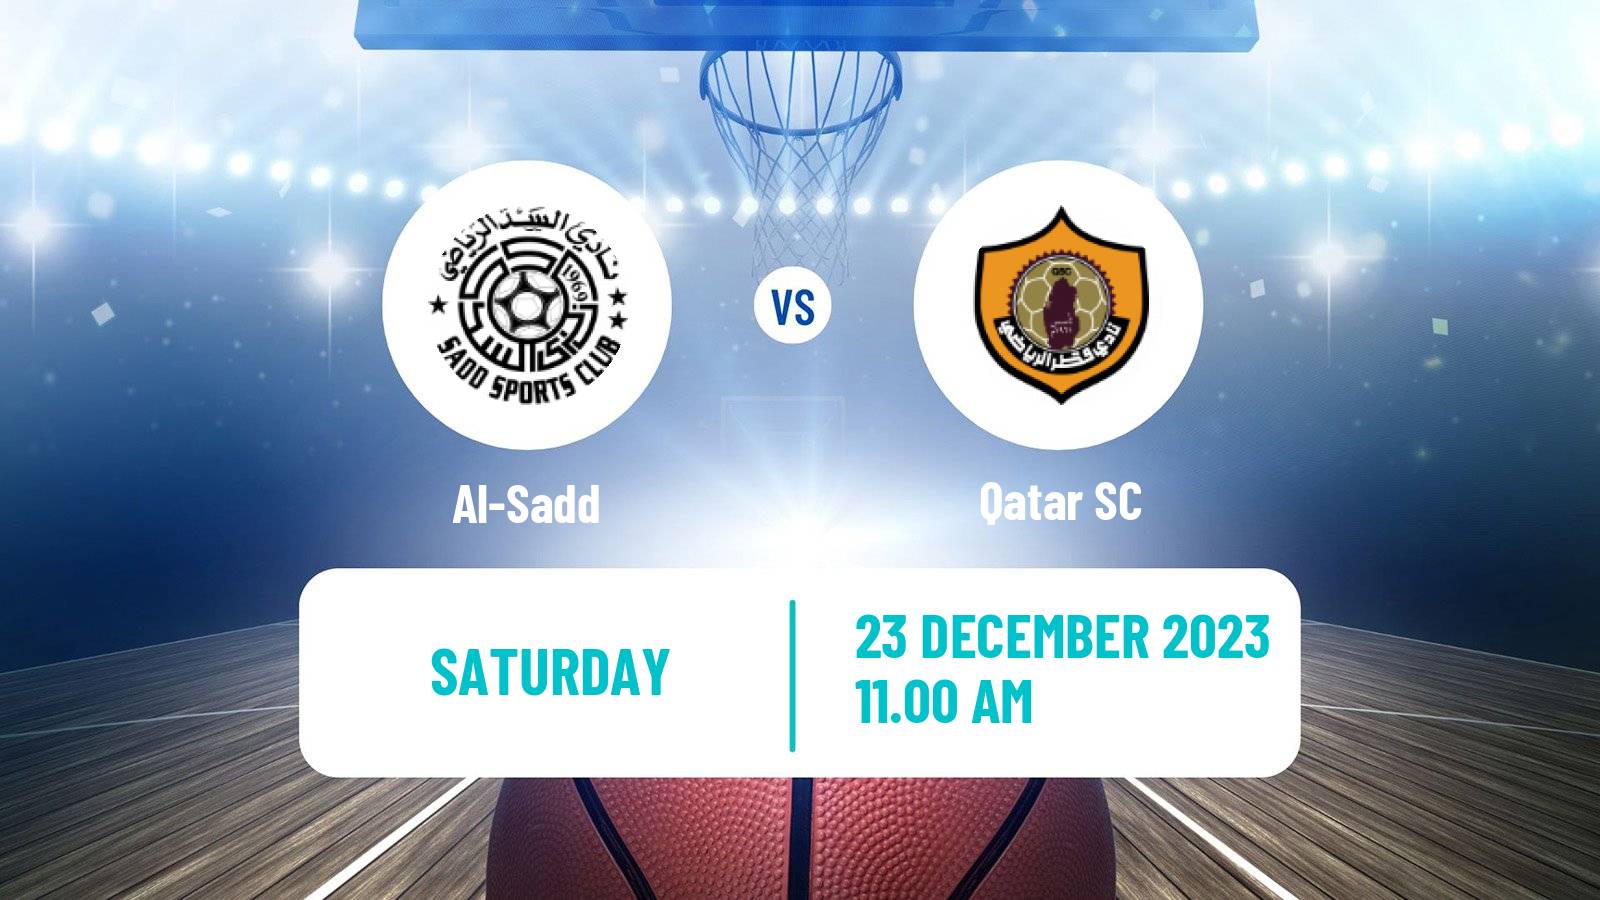 Basketball Qatar Basketball League Al-Sadd - Qatar SC